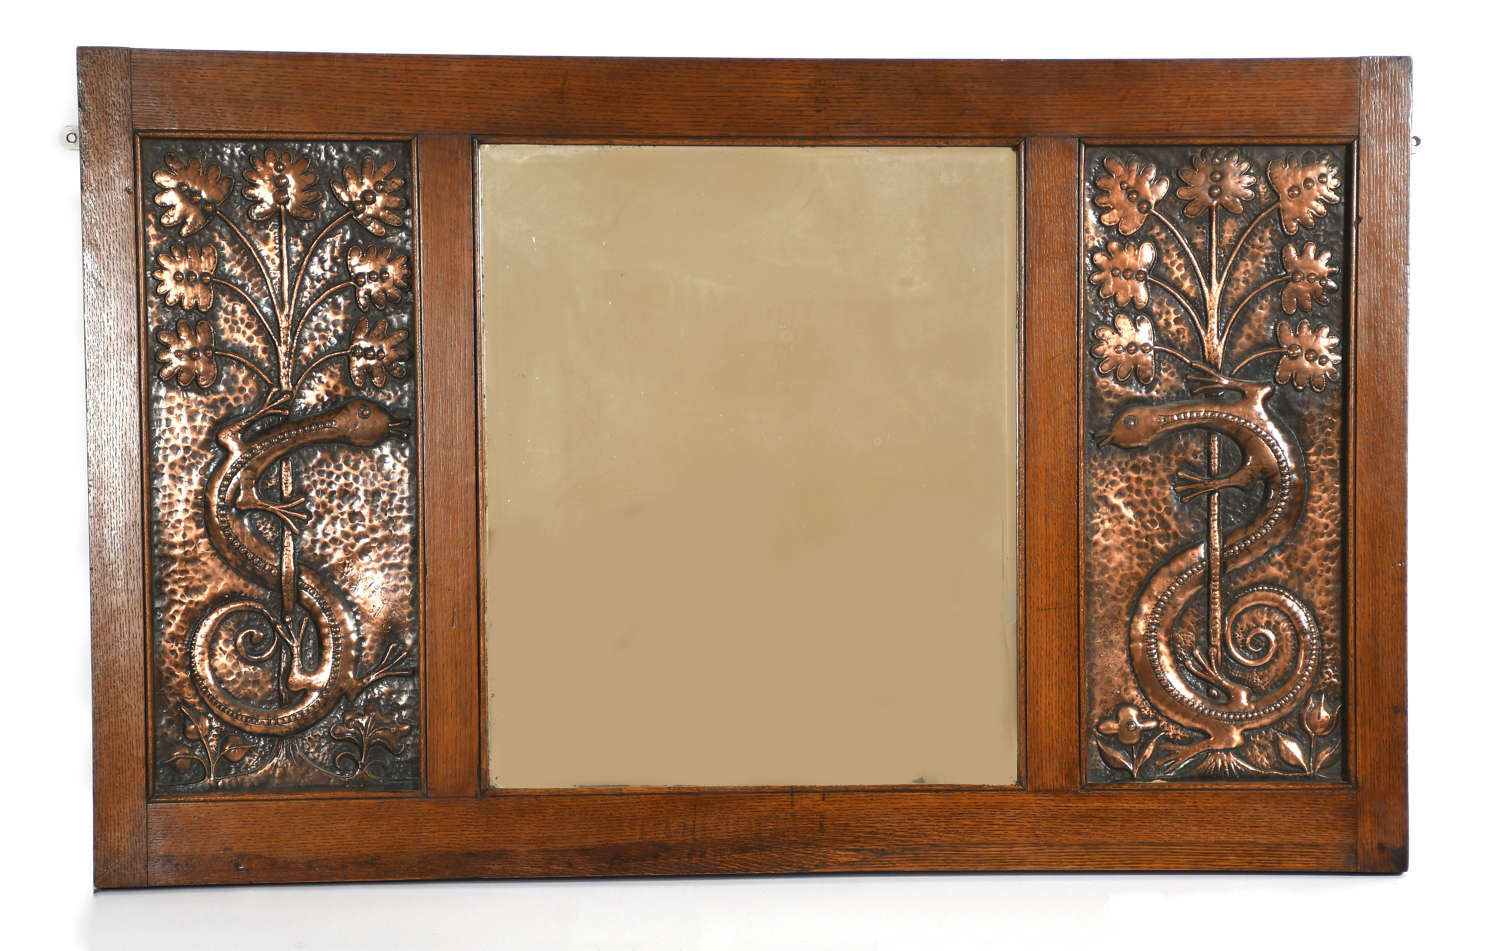 Rare John Pearson Arts & Crafts large oak and copper beastie mirror